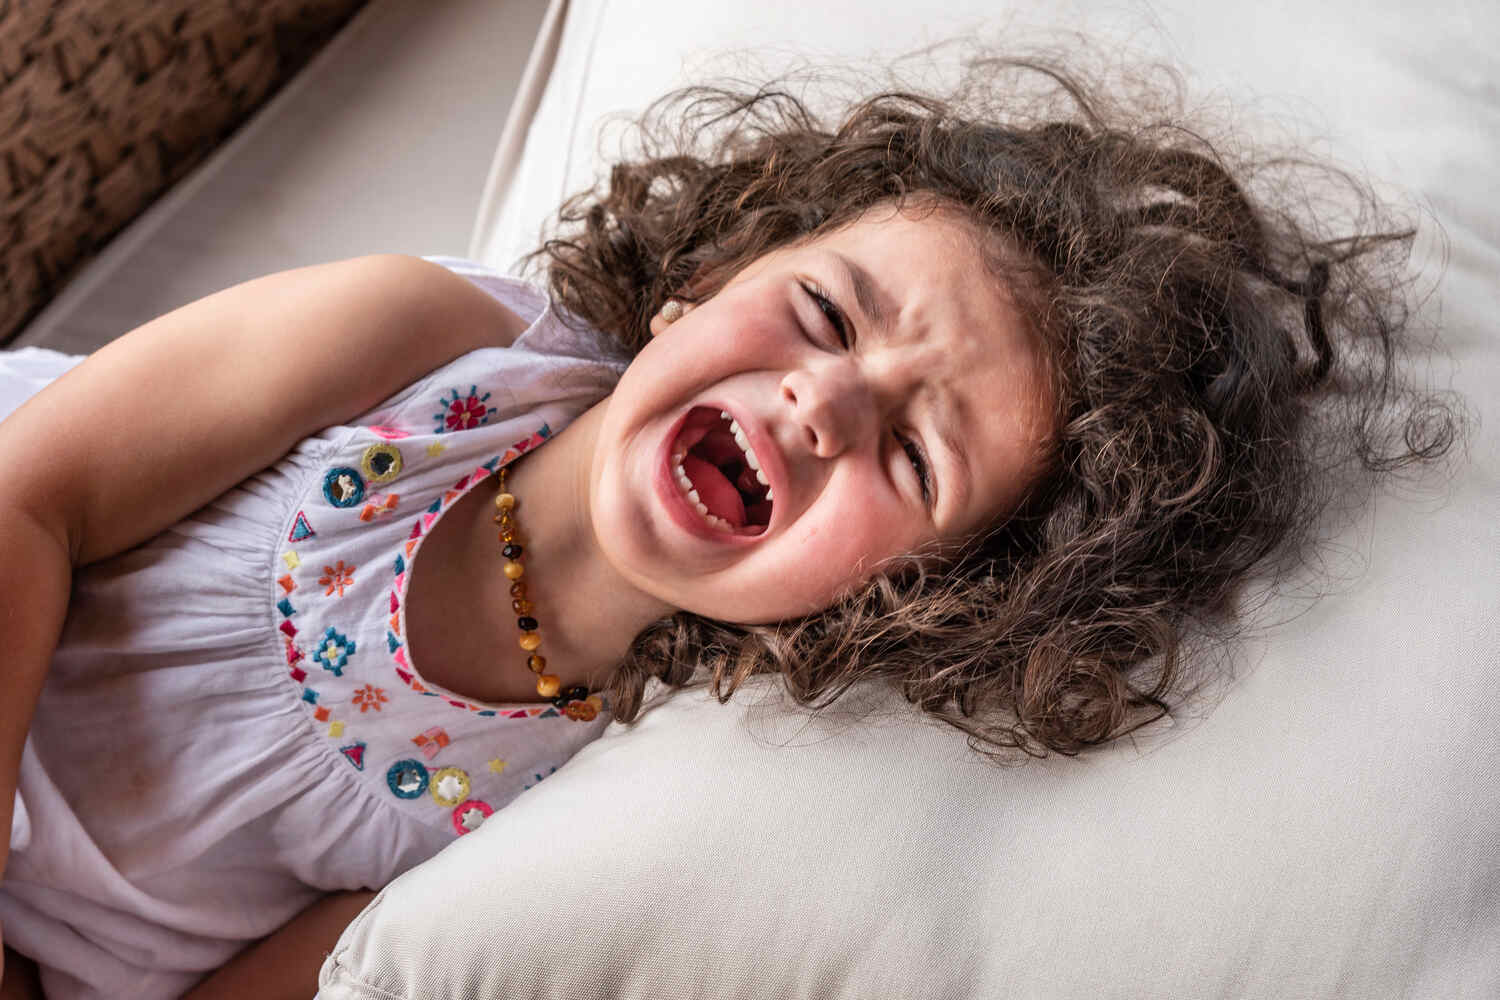 A toddler girl having a temper tantrum